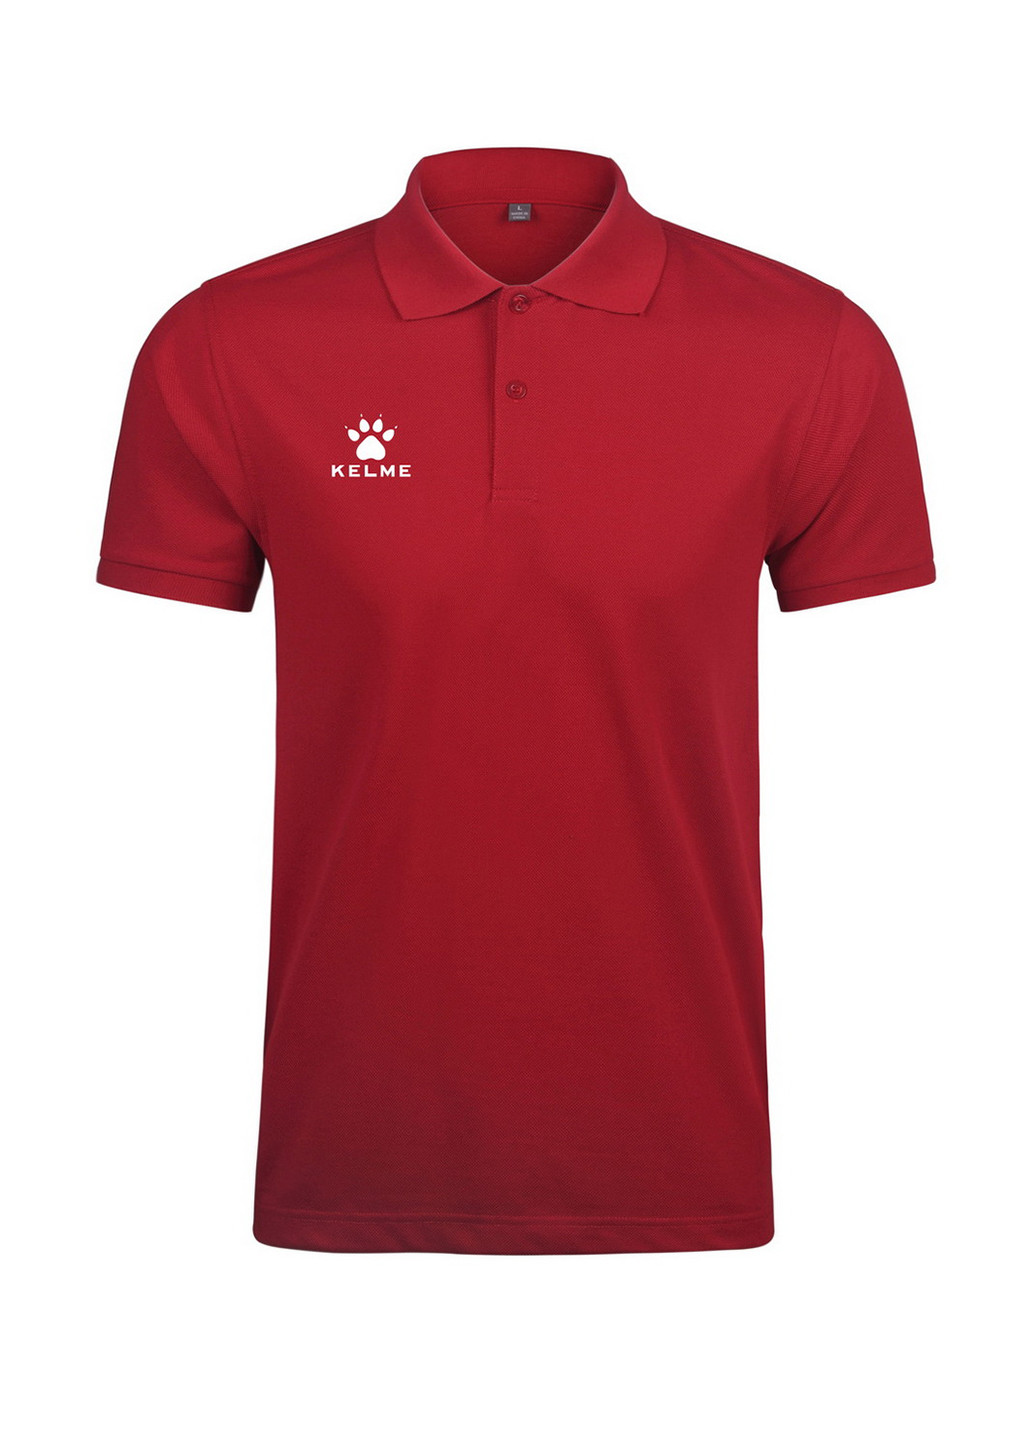 Темно-красная детская футболка-поло Kelme с логотипом